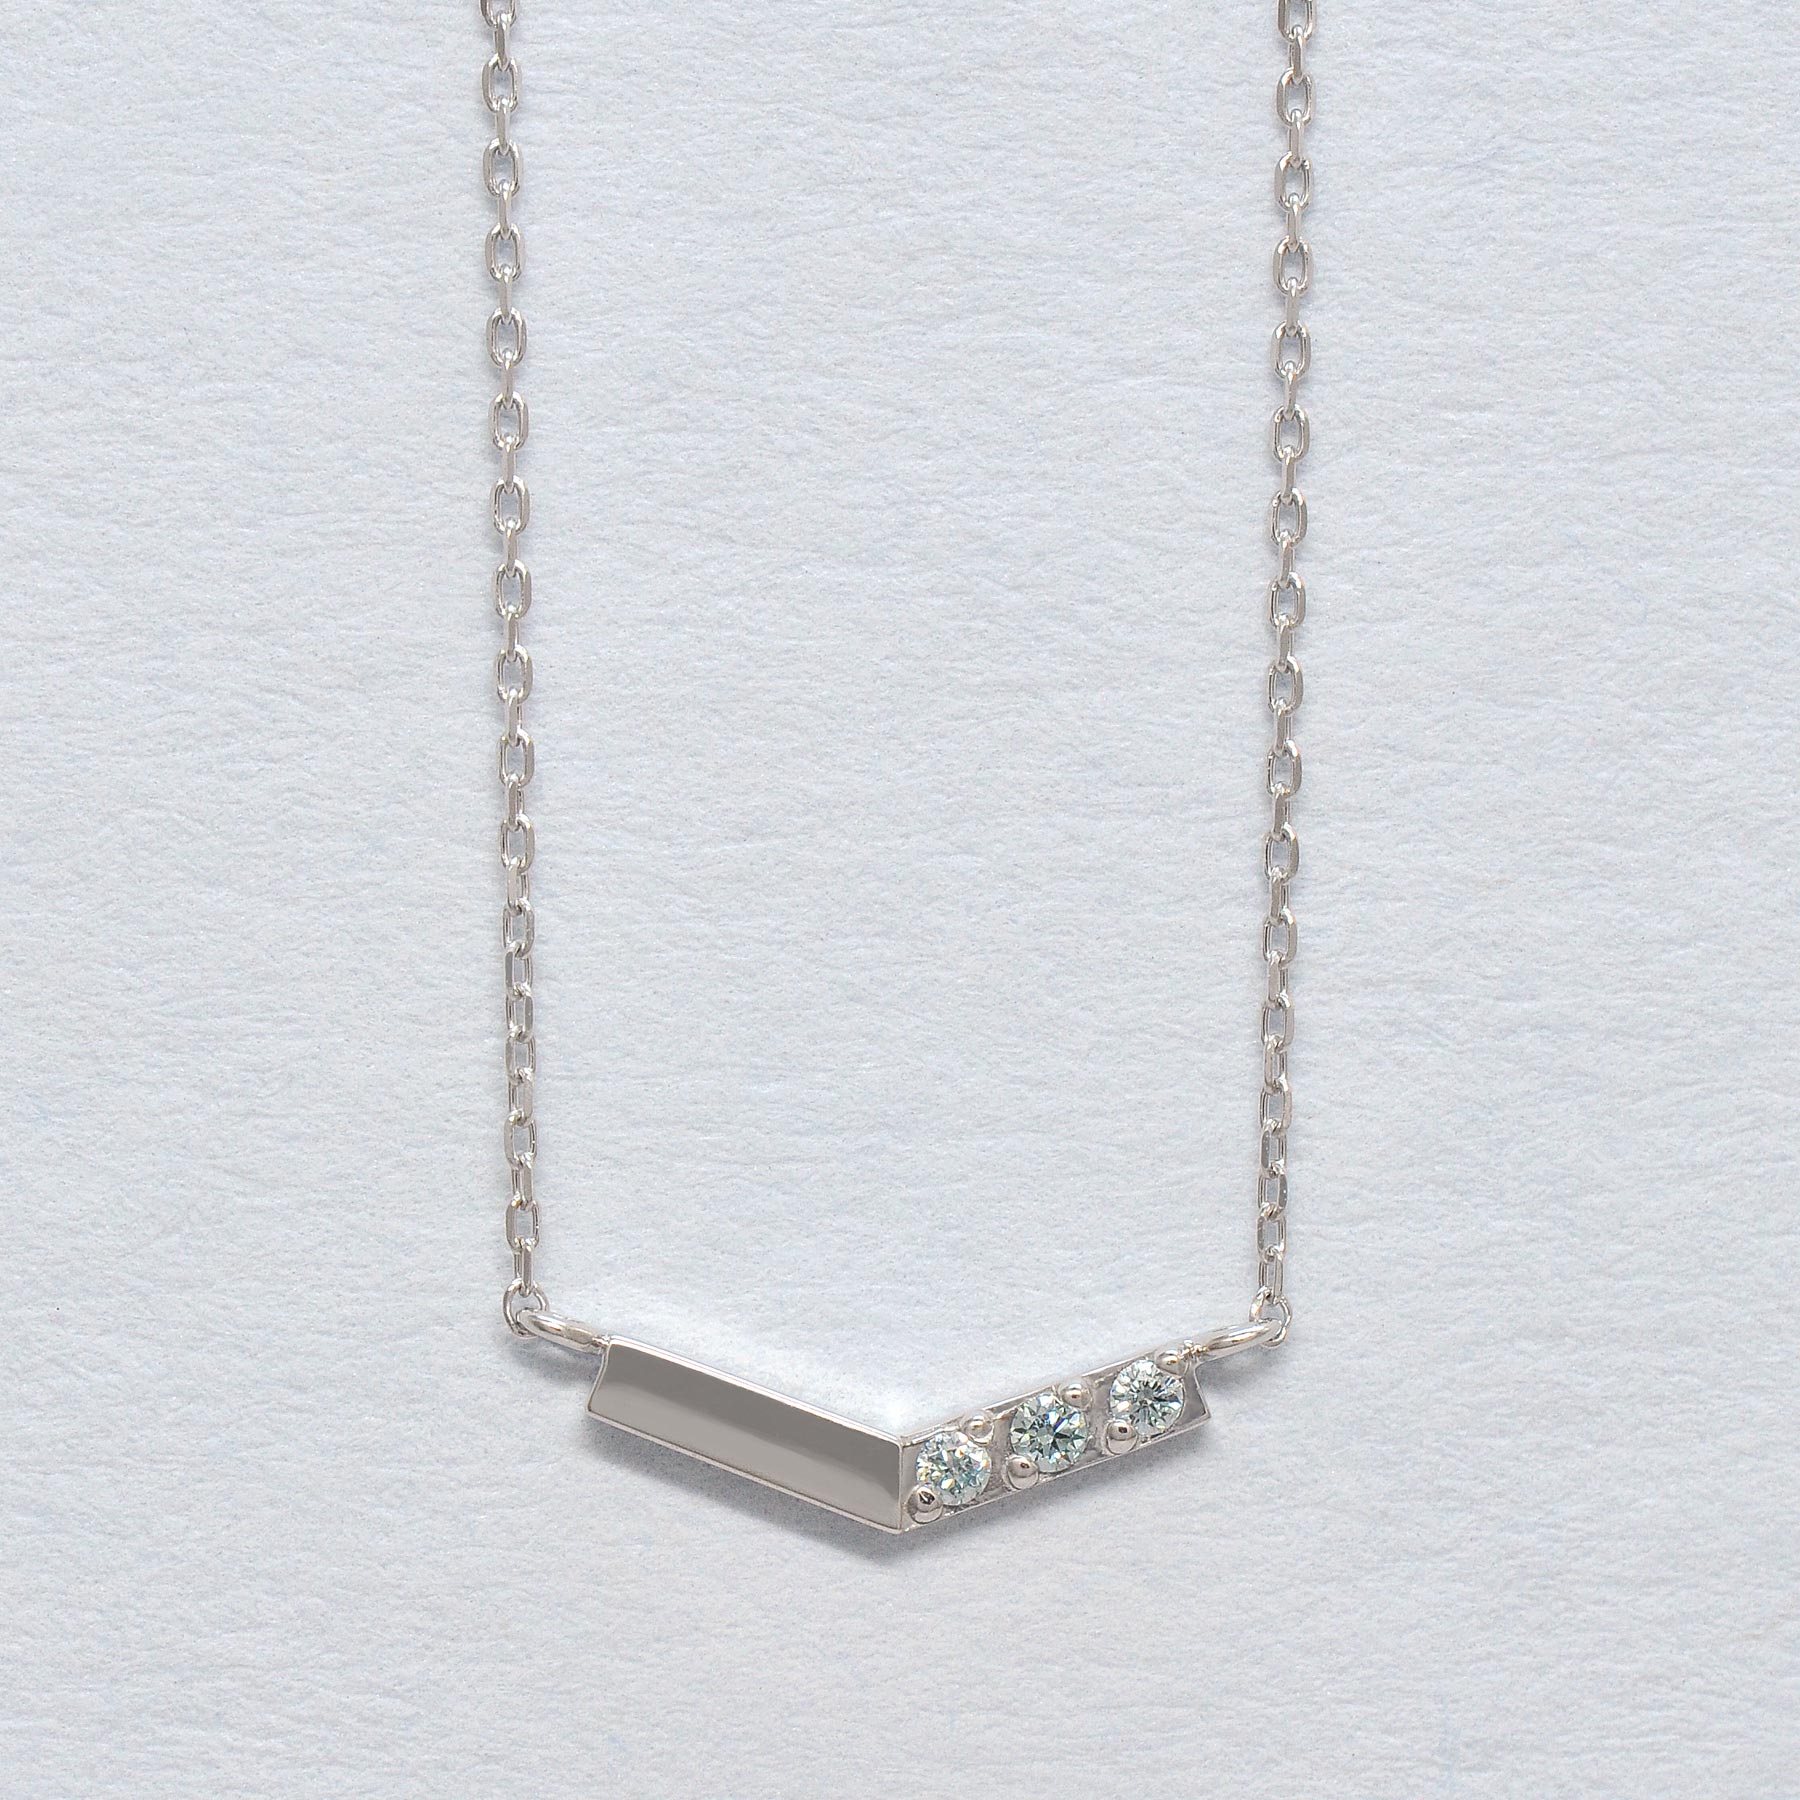 10K White Gold Ice Blue Diamond V-Shaped 3-Stone Necklace - Product Image